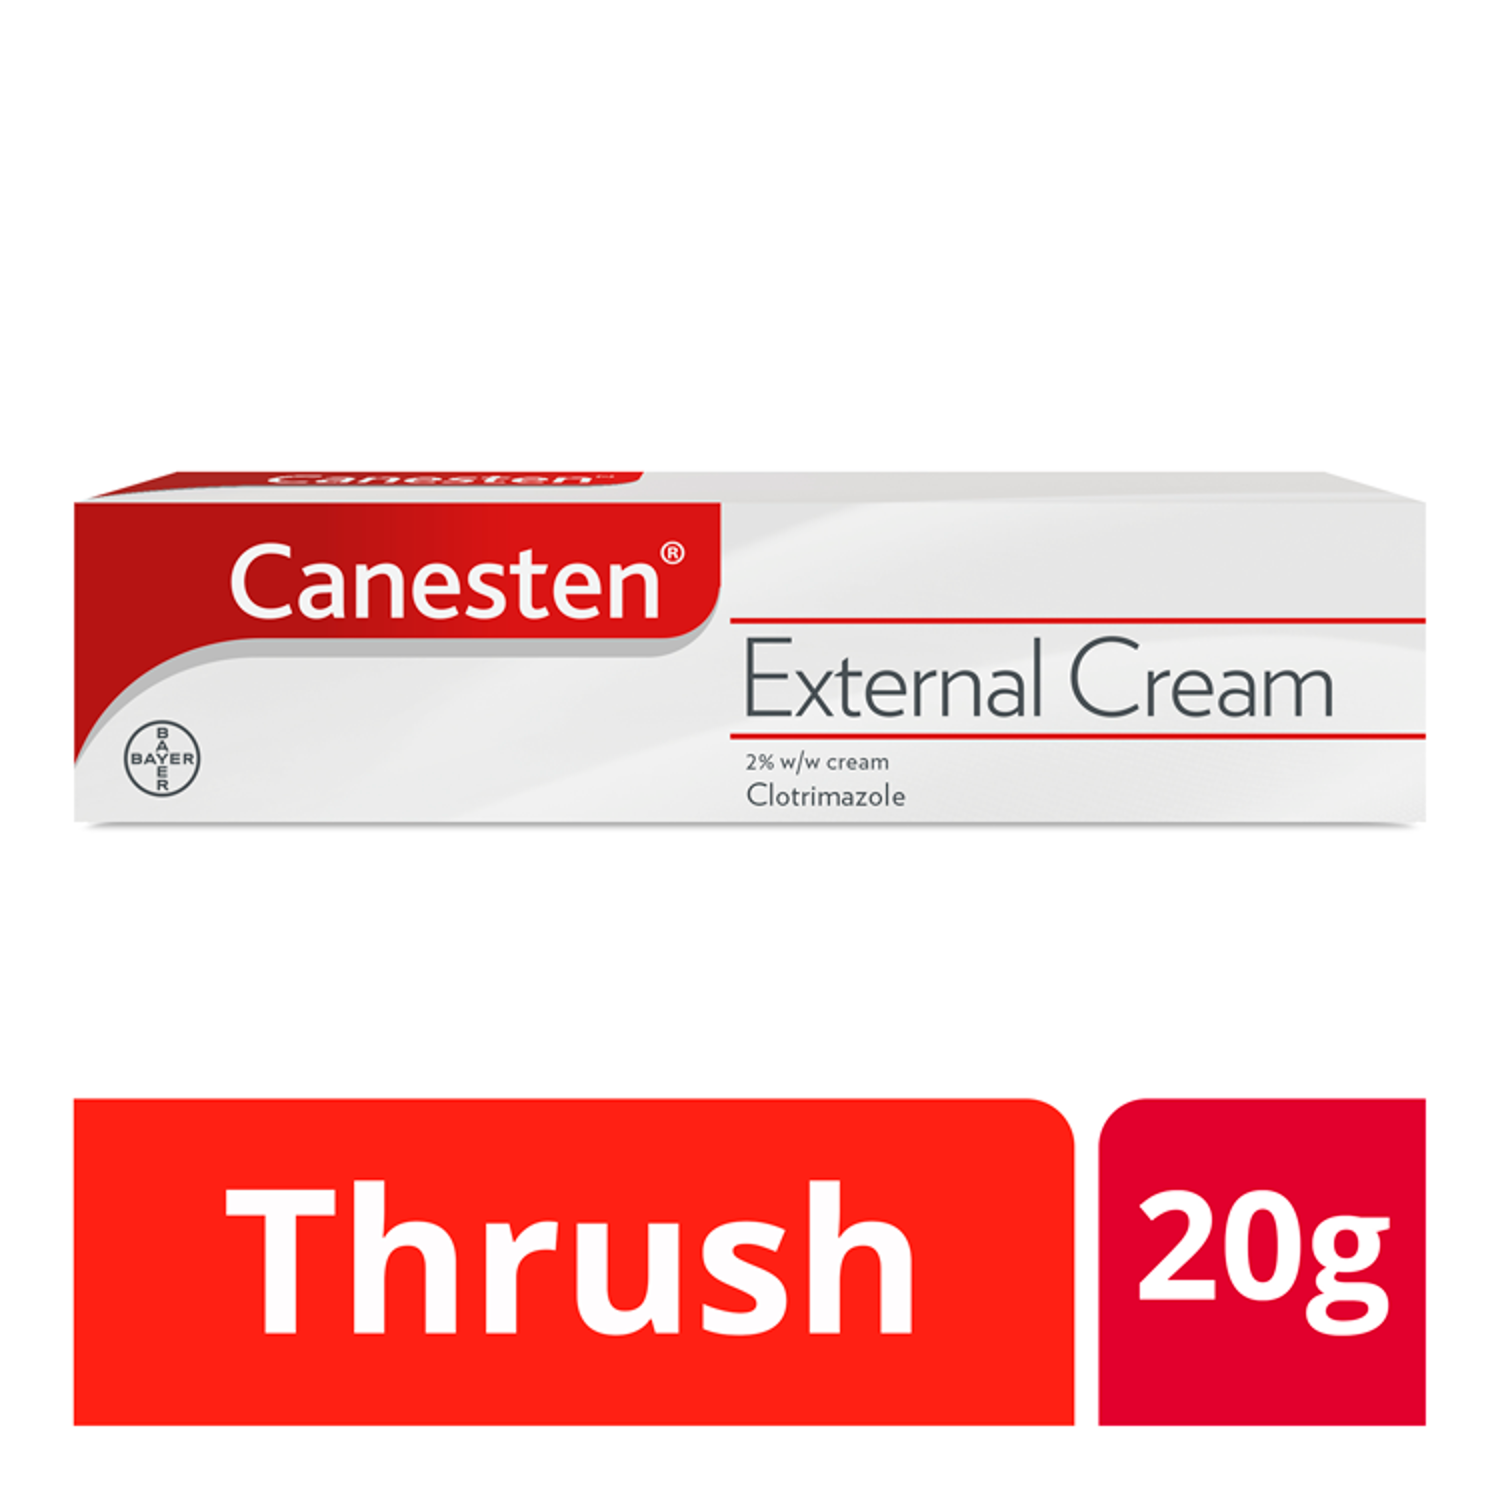 Canesten Thrush External Cream (20g)